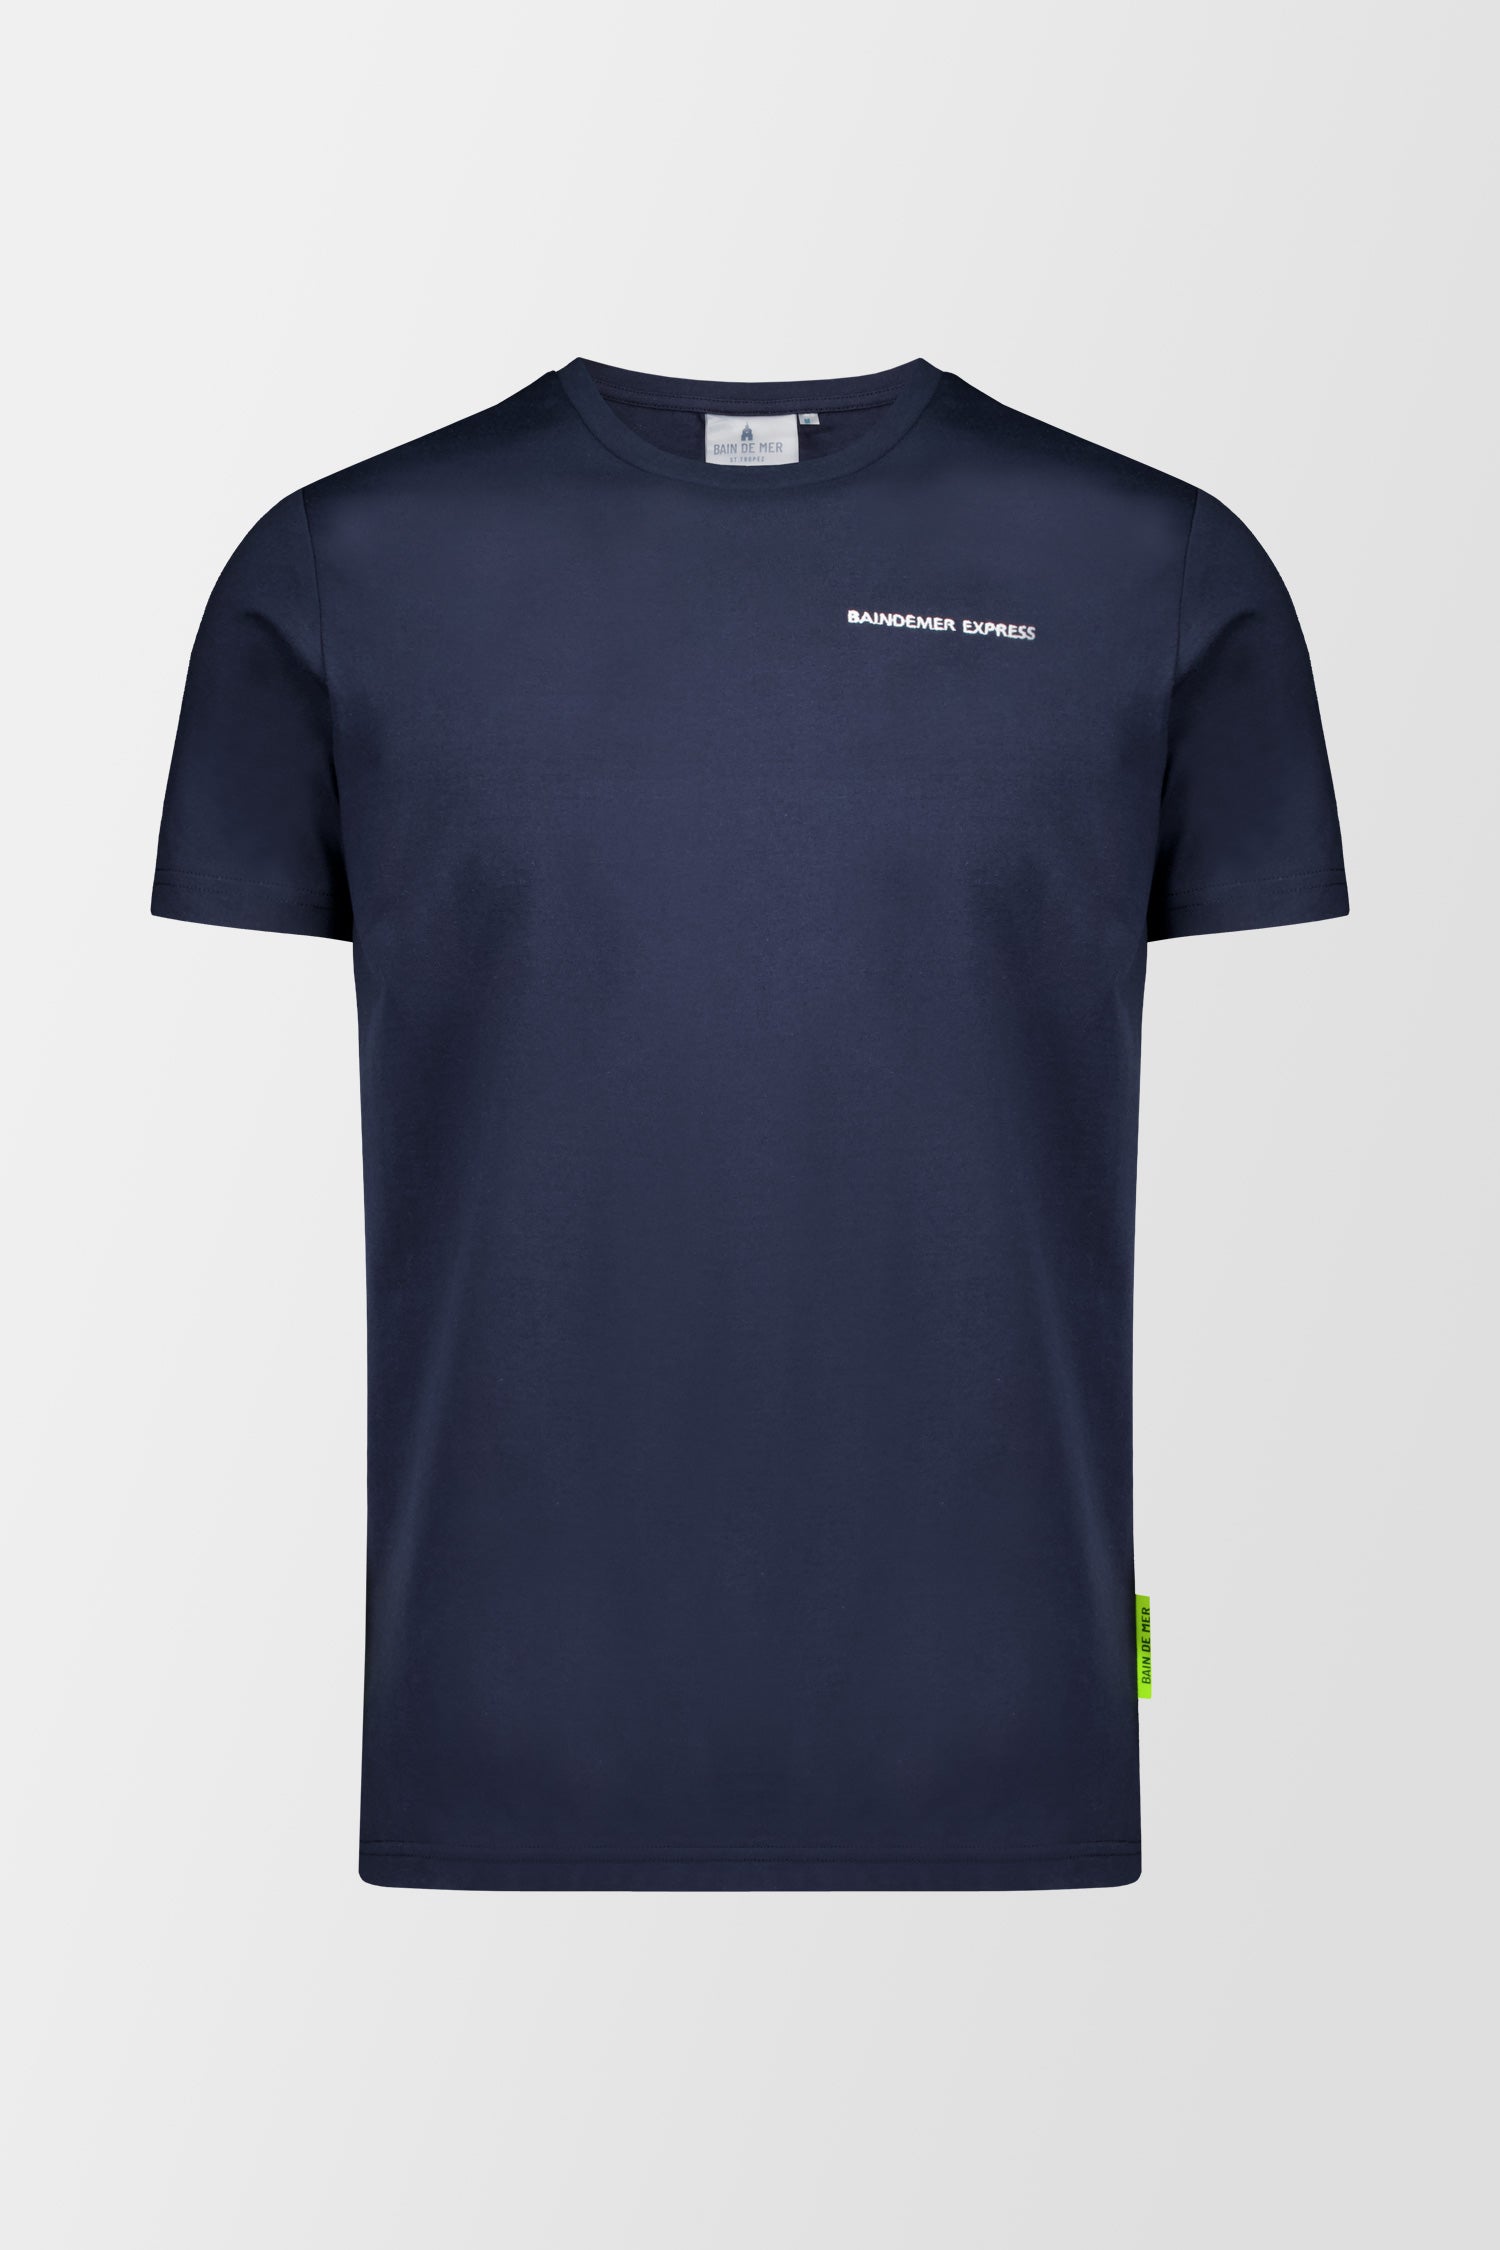 Bain de Mer Navy Express T-Shirt